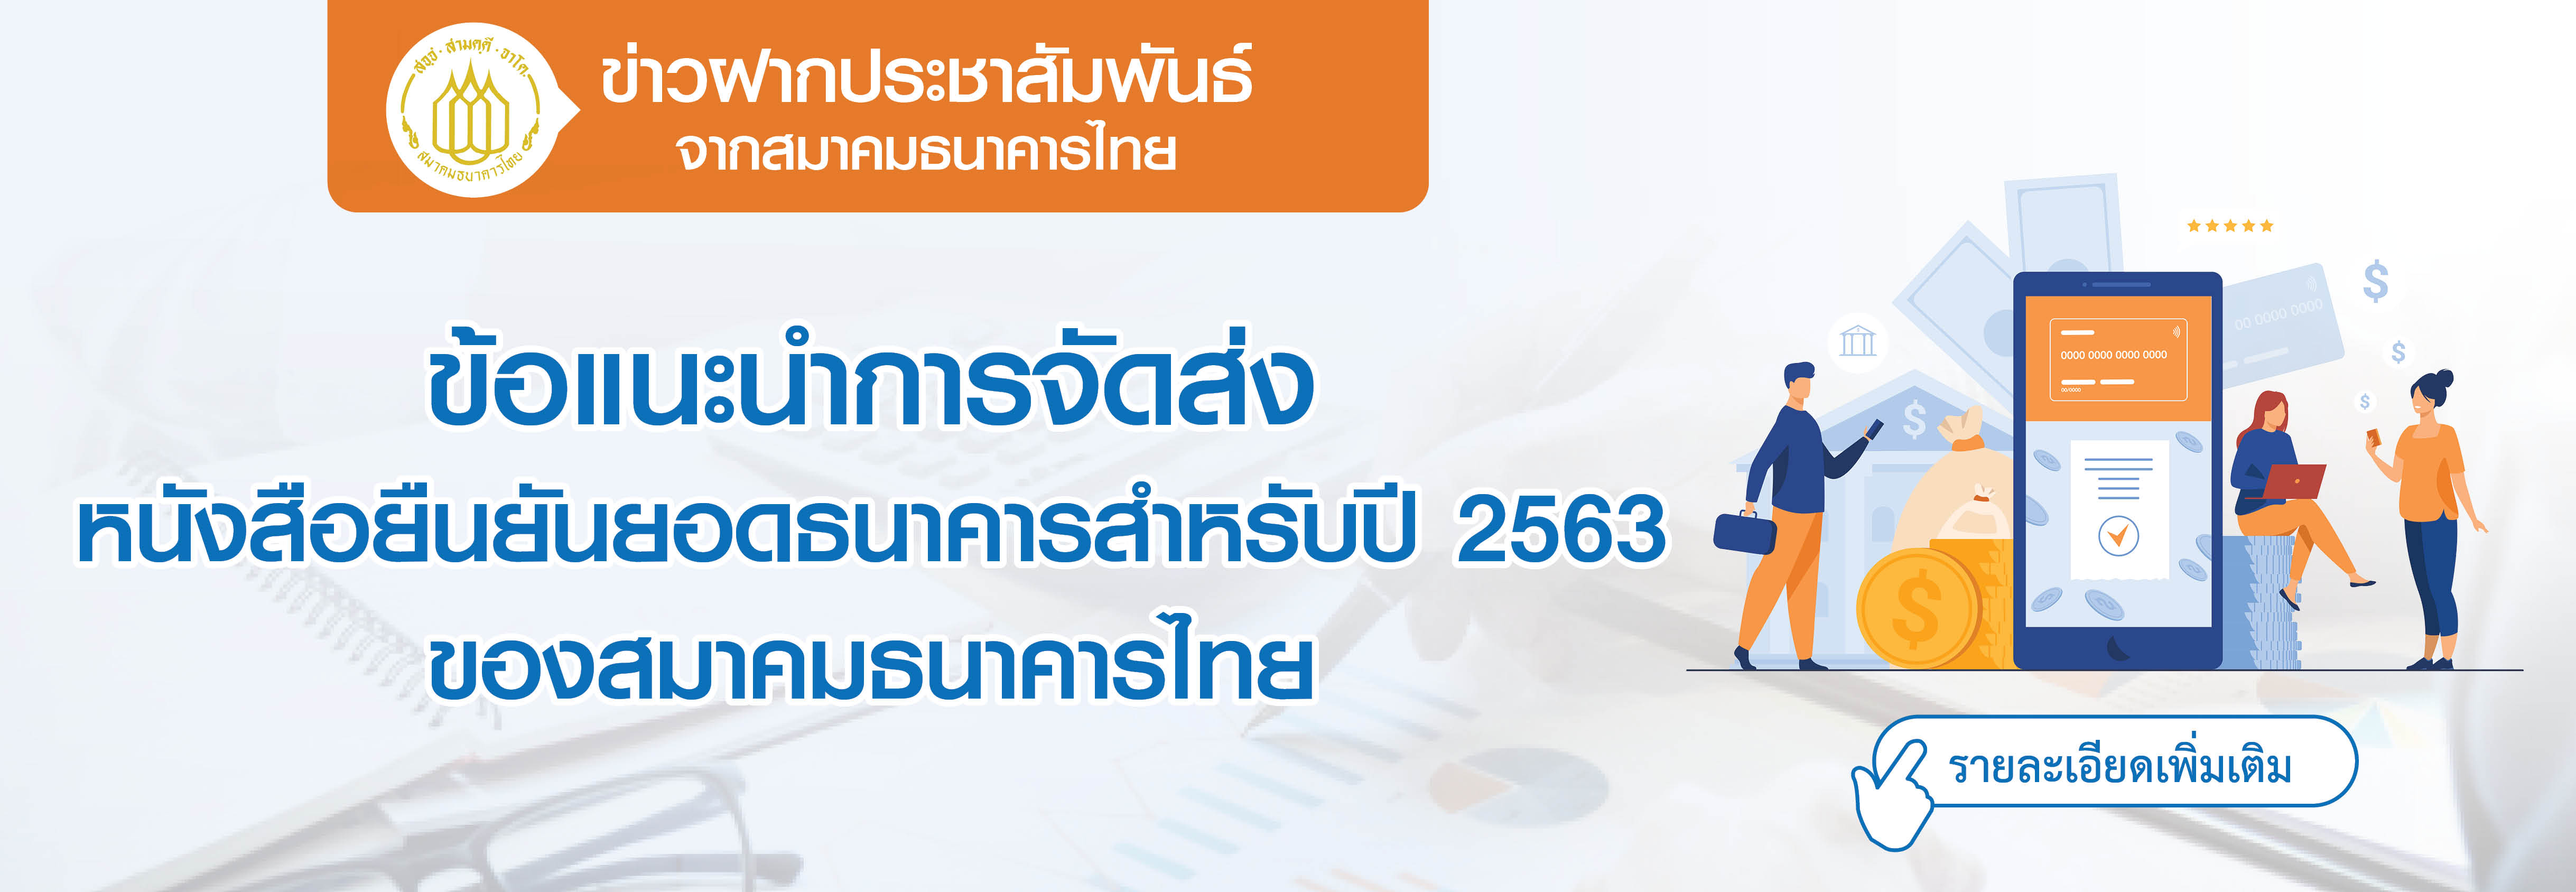 ข่าวฝากประชาสัมพันธ์จากสมาคมธนาคารไทย ข้อแนะนำการจัดส่งหนังสือยืนยันยอดธนาคารสำหรับปี 2563 ของสมาคมธนาคารไทย